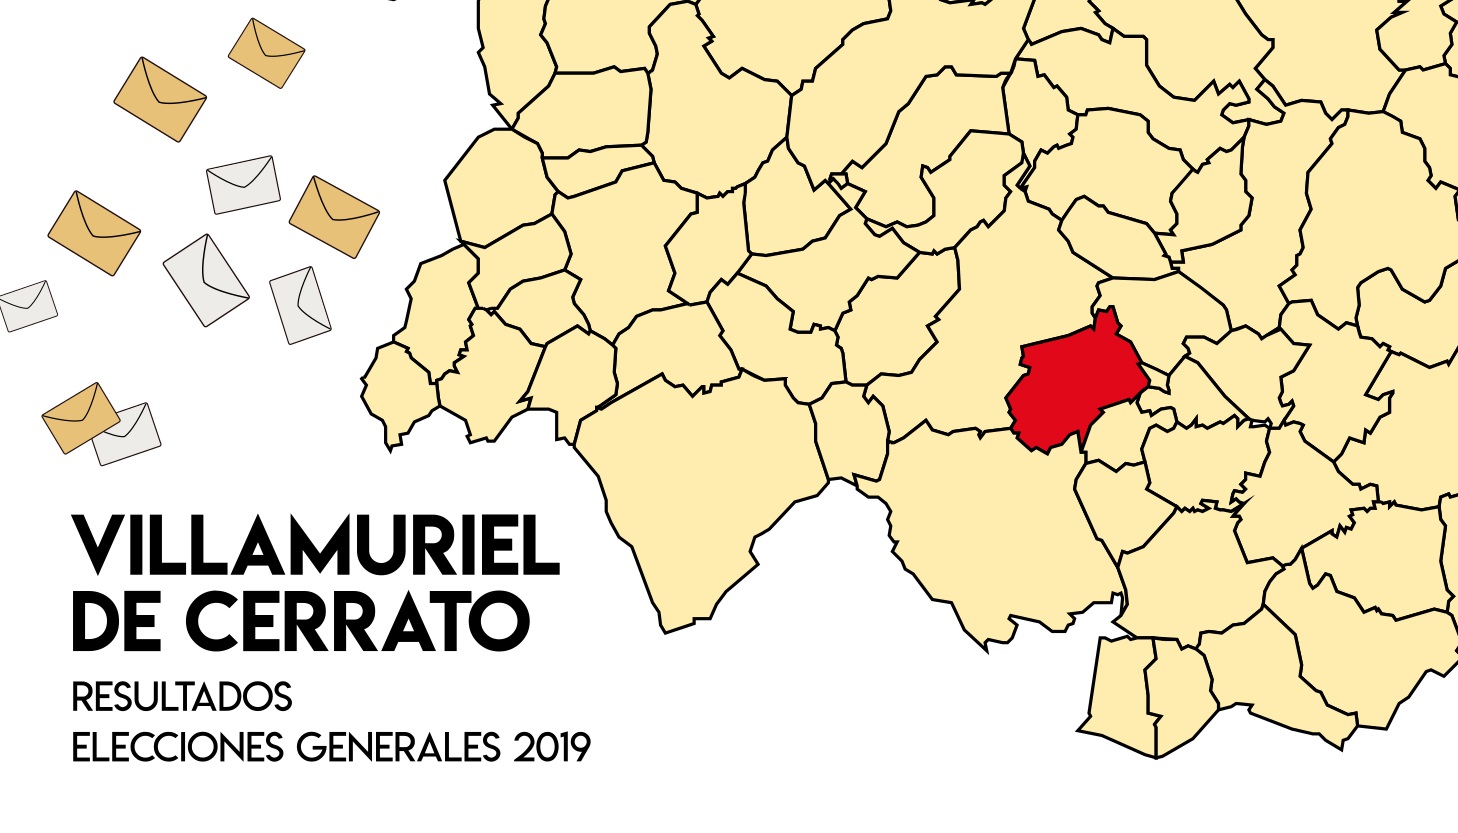 Resultados Elecciones Generales 2019 Villamuriel de Cerrato Palencia